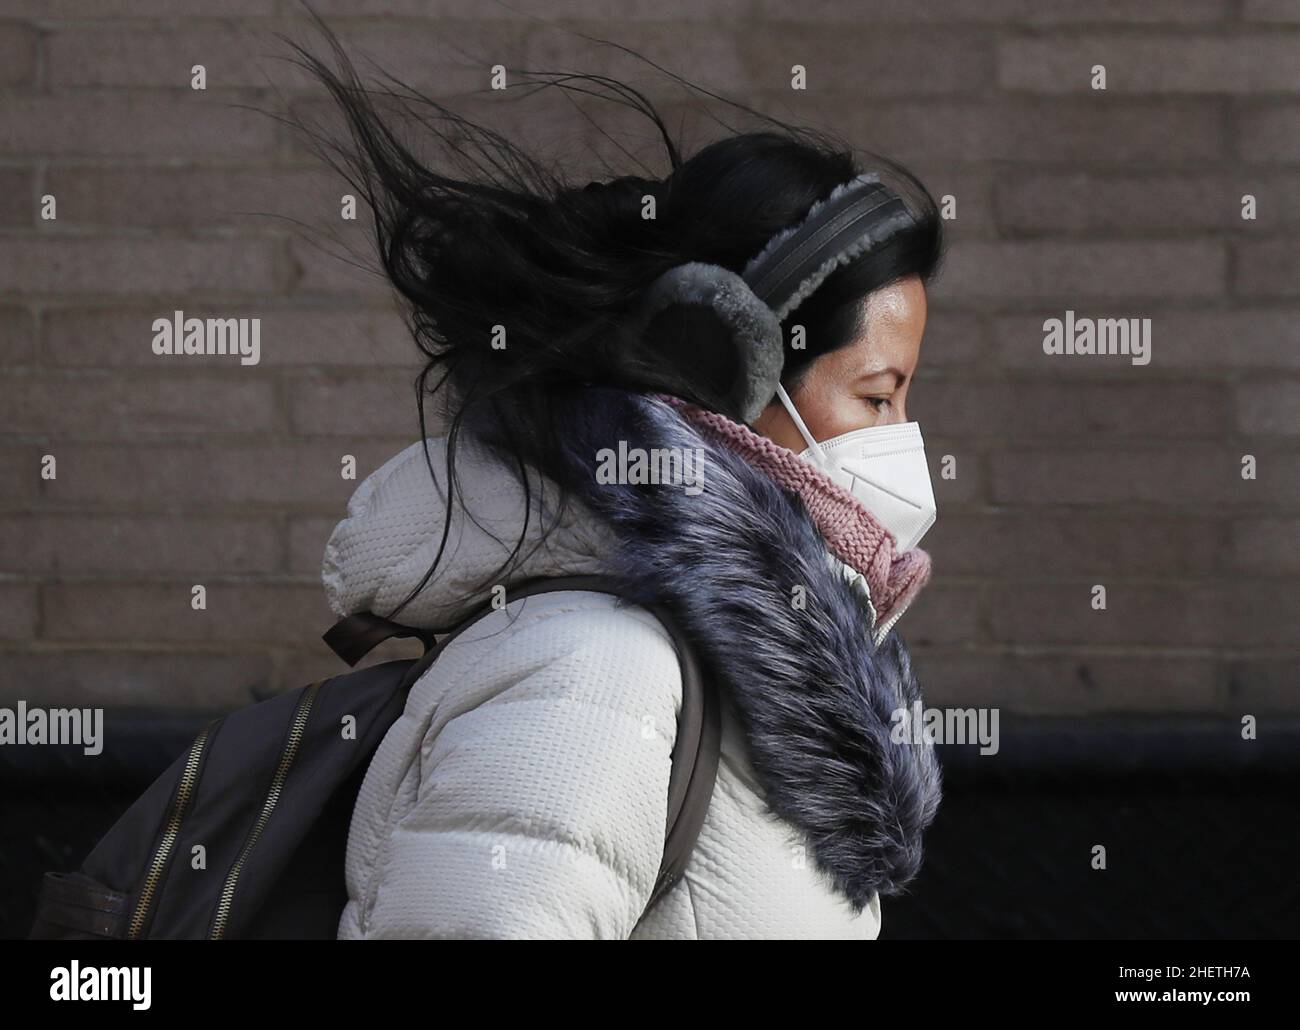 New York, Usa. 12th Januar 2022. Ein Fußgänger, der für eiskalte Temperaturen gekleidet ist, geht am Mittwoch, den 12. Januar 2022, auf dem Bürgersteig in New York City. Die Temperaturen in New York stiegen heute über die Gefriermarke, aber es wird erwartet, dass sie wieder unter den Gefrierpunkt fallen werden, wobei für das kommende Wochenende Schnee möglich ist. Foto von John Angelillo/UPI Credit: UPI/Alamy Live News Stockfoto